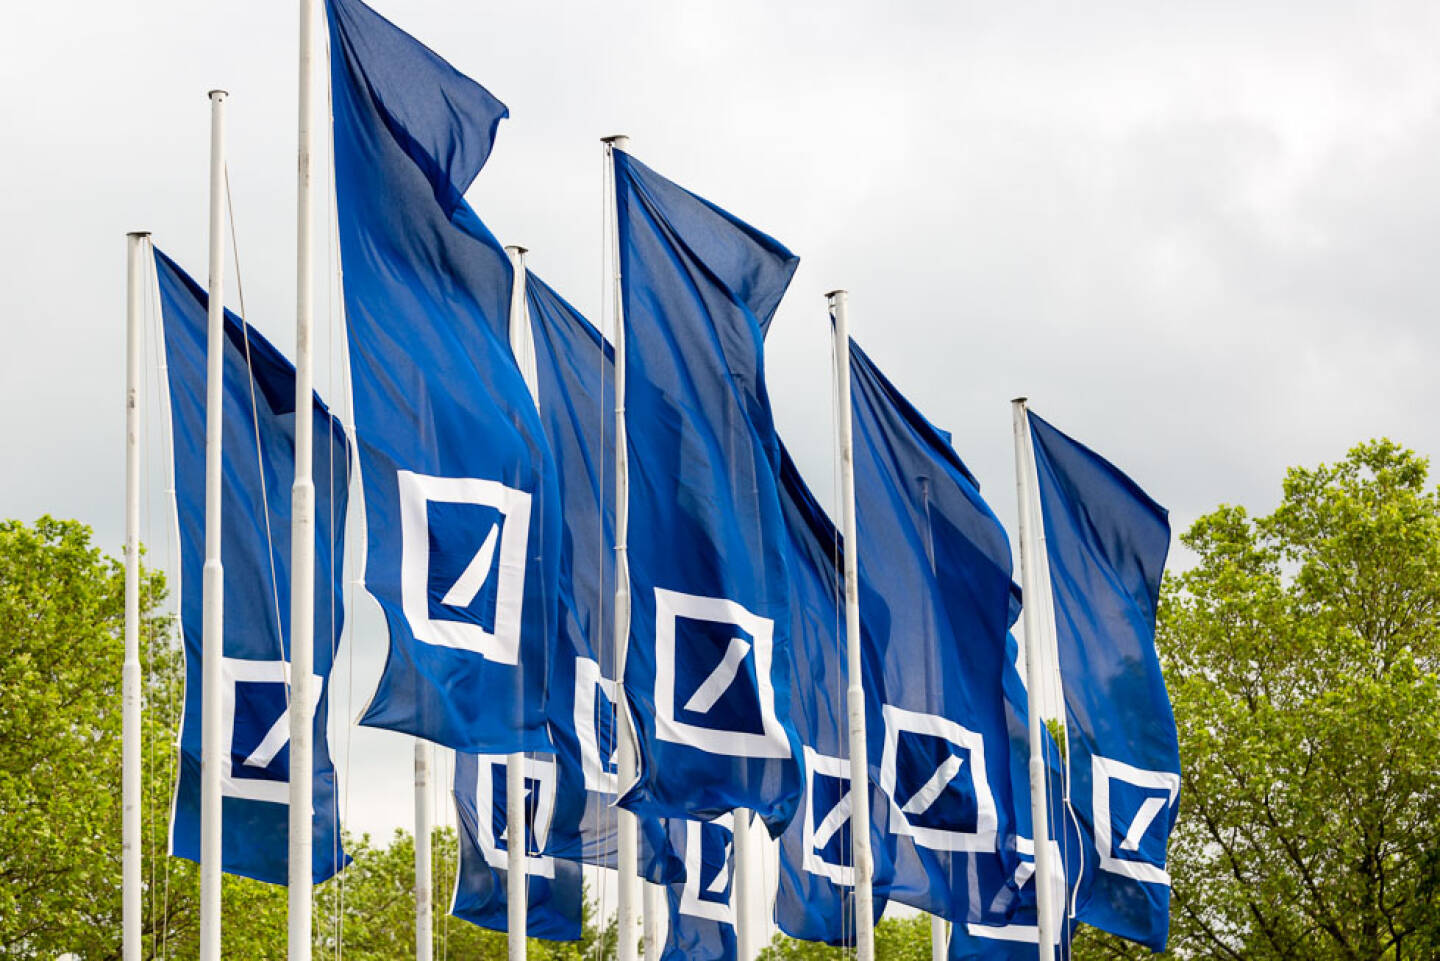 Deutsche Bank, Fahnen, Credit: Mario Andreya